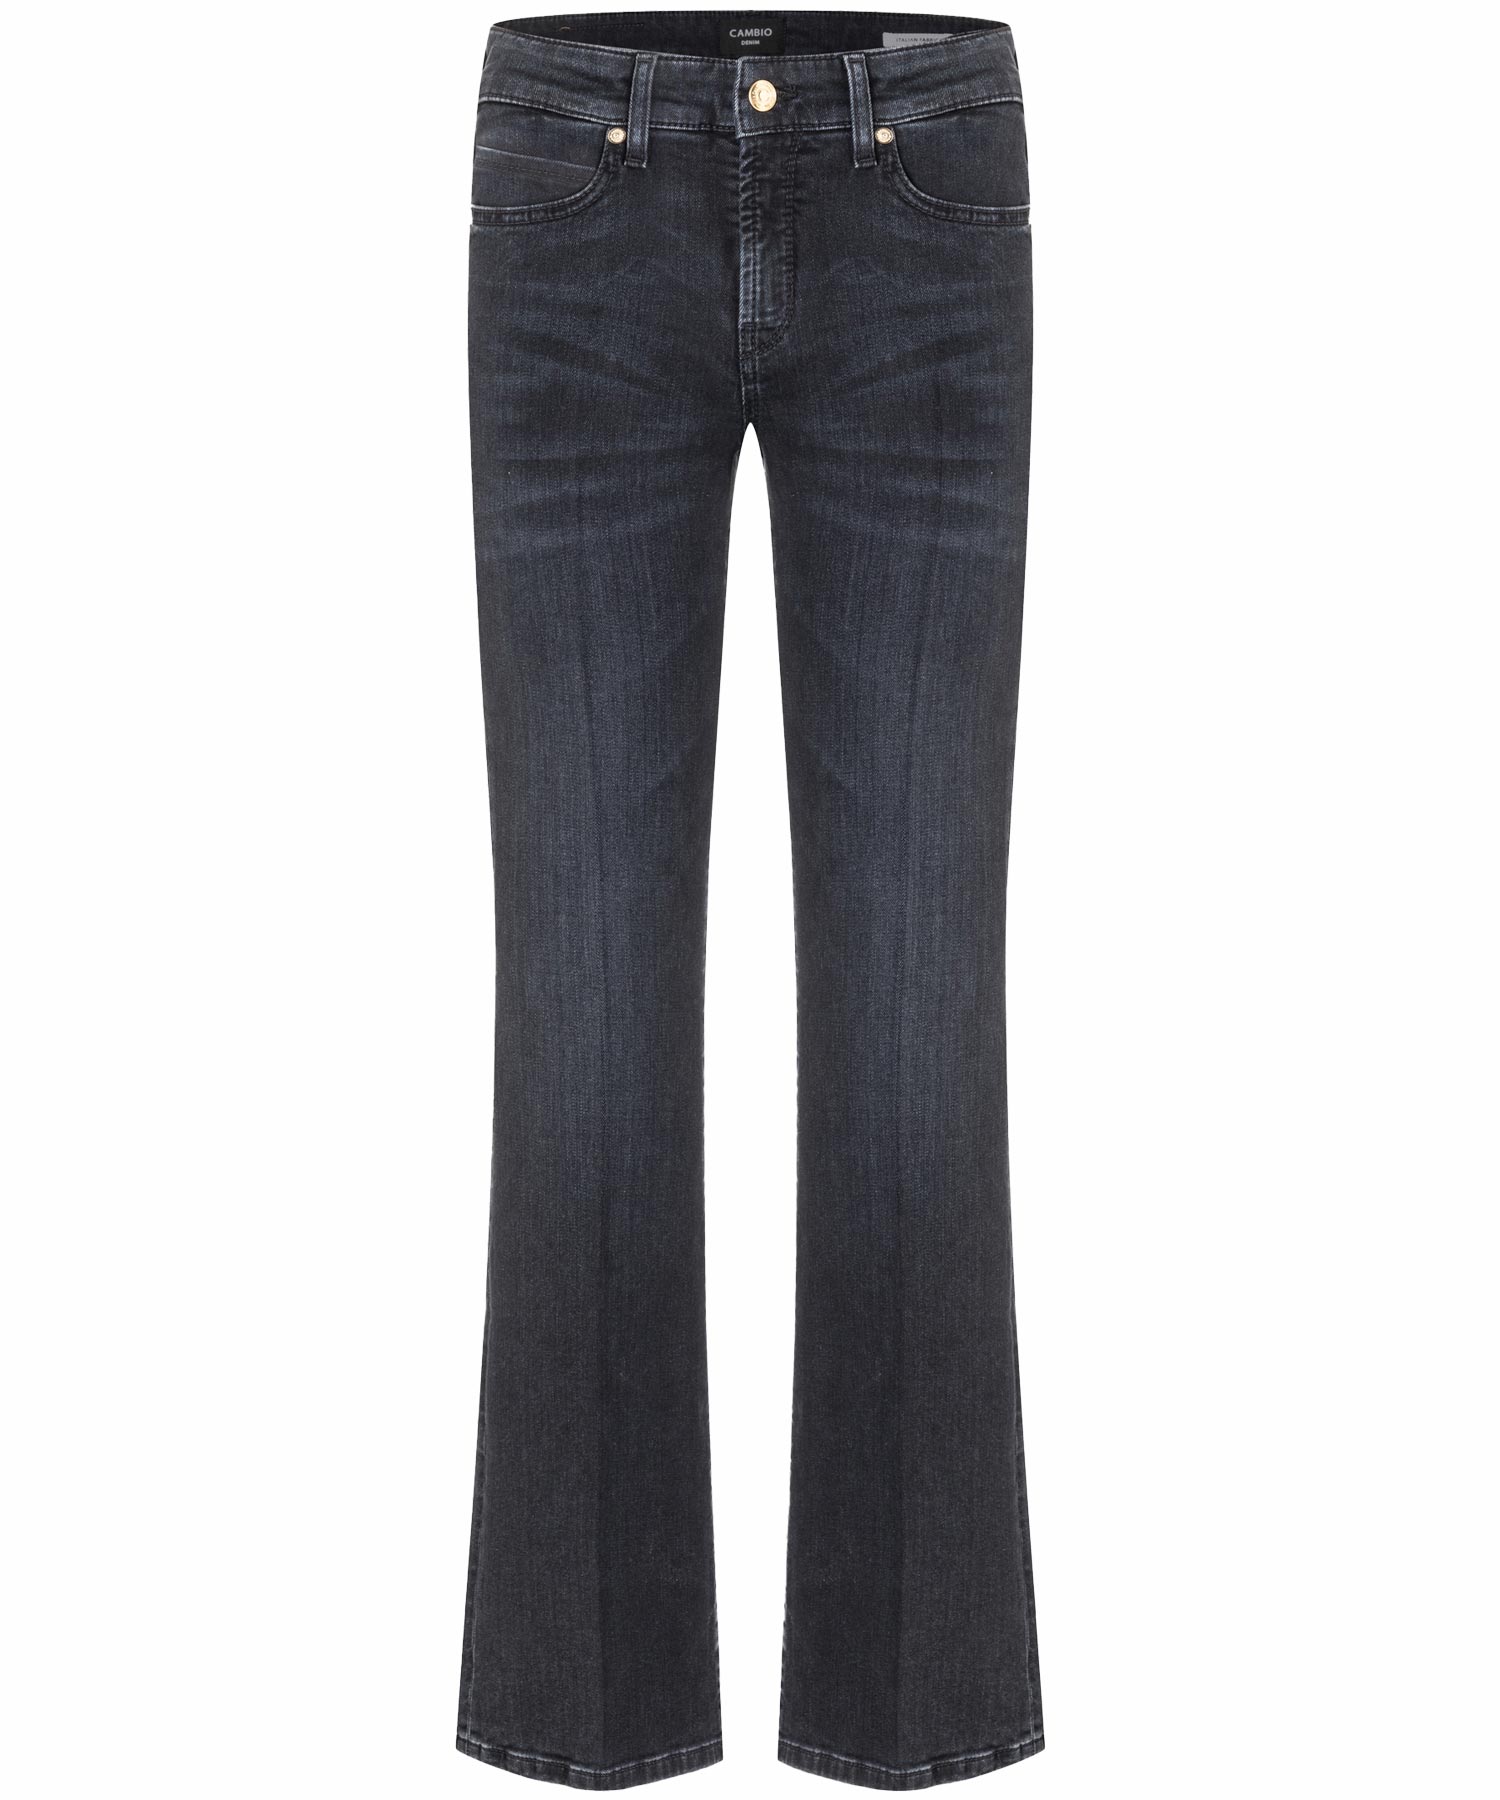 Cambio Jeans Paris flared in modern dark denim